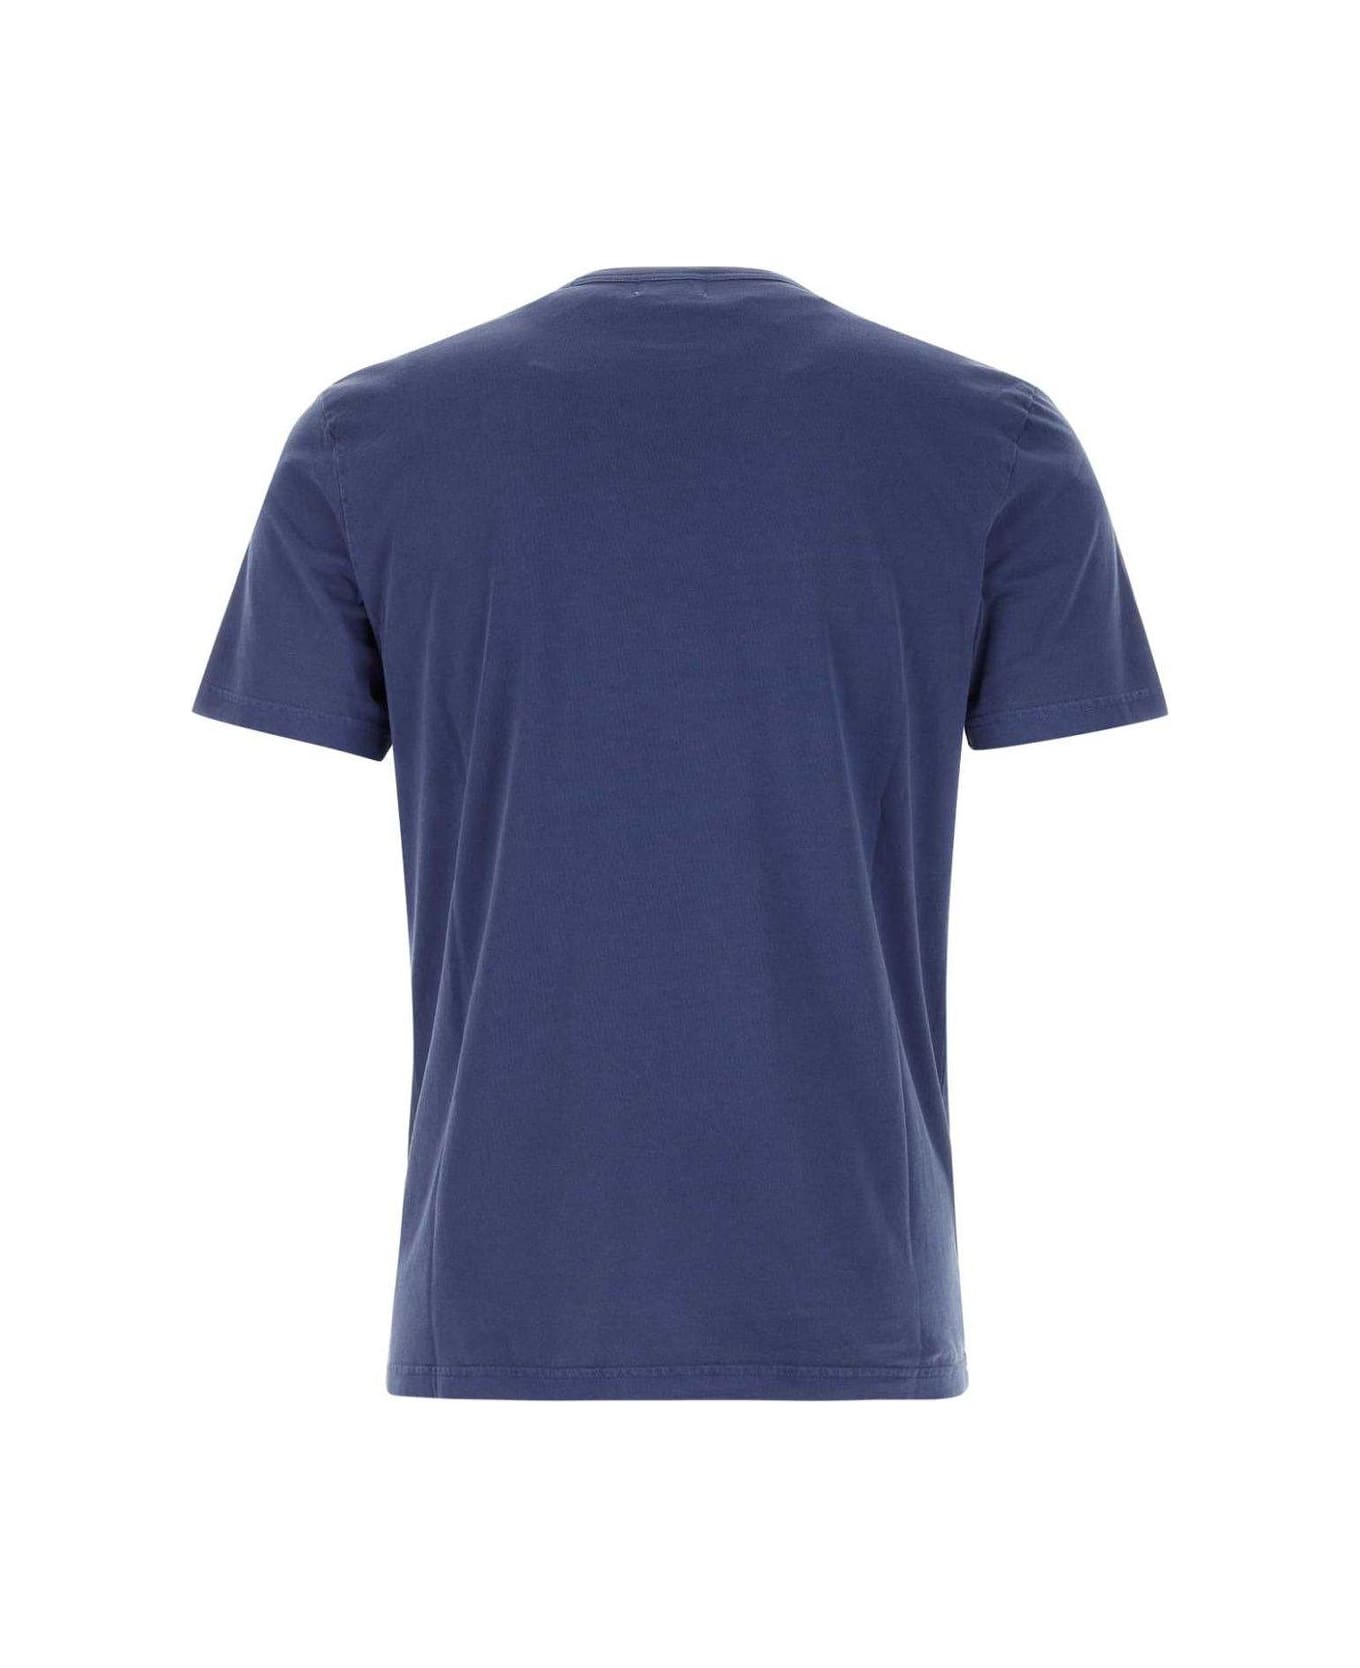 Woolrich Short-sleeved Crewneck T-shirt - Maritime blue